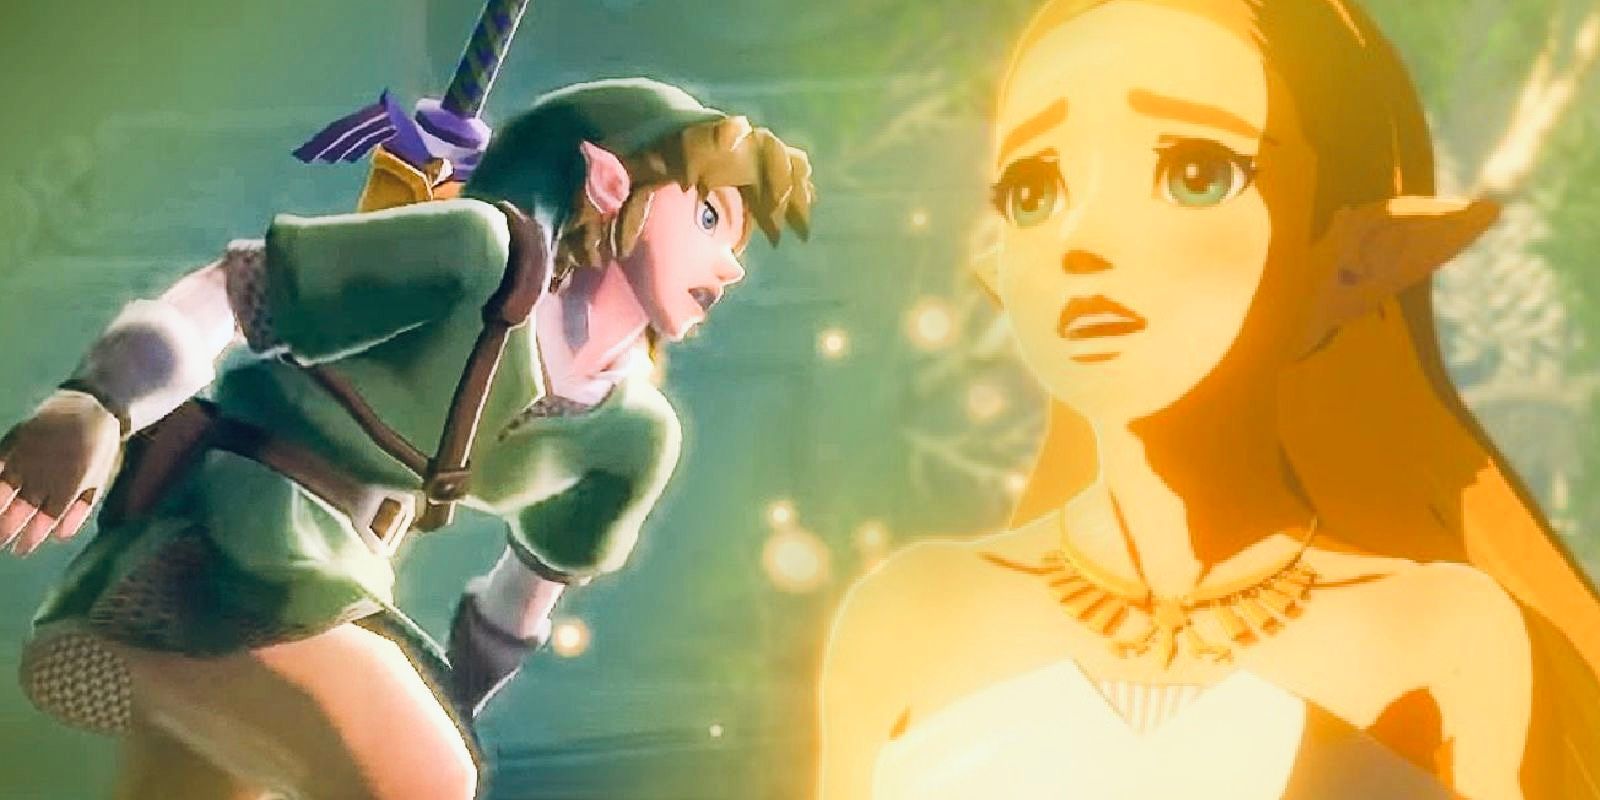 Link running to Zelda in Skyward Sword and Princess Zelda in Breath of the Wild